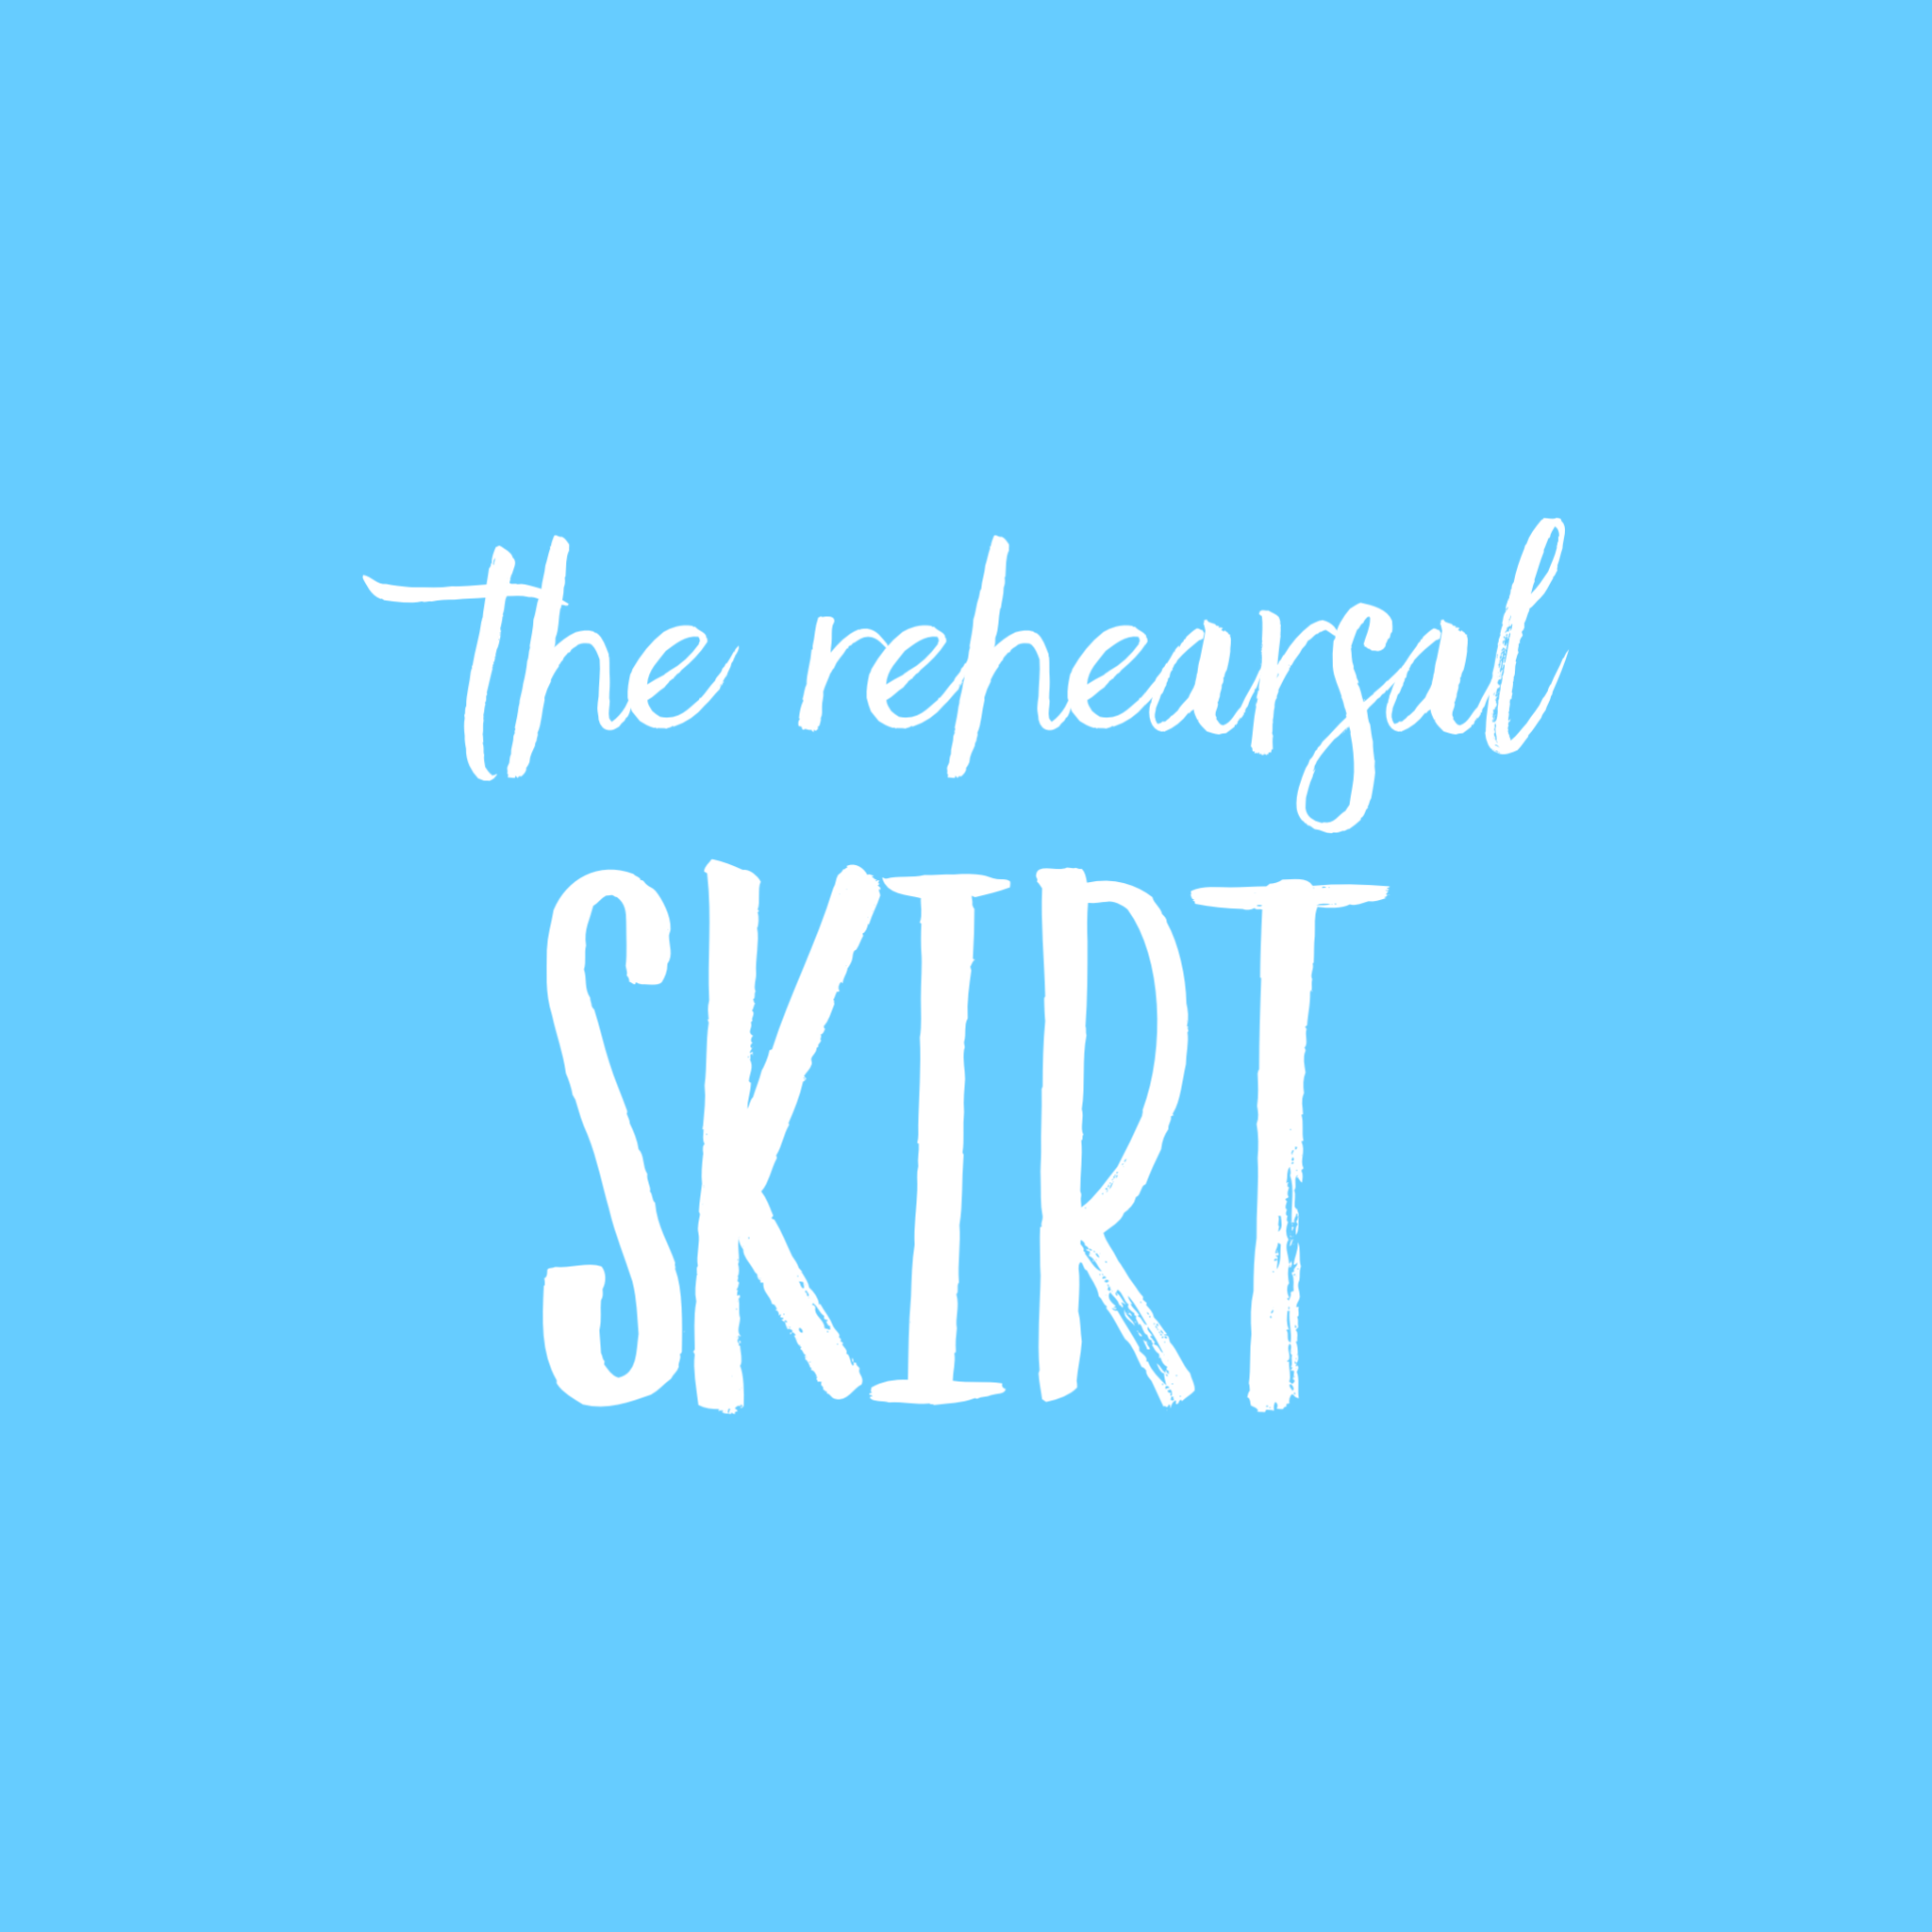 The Rehearsal Skirt